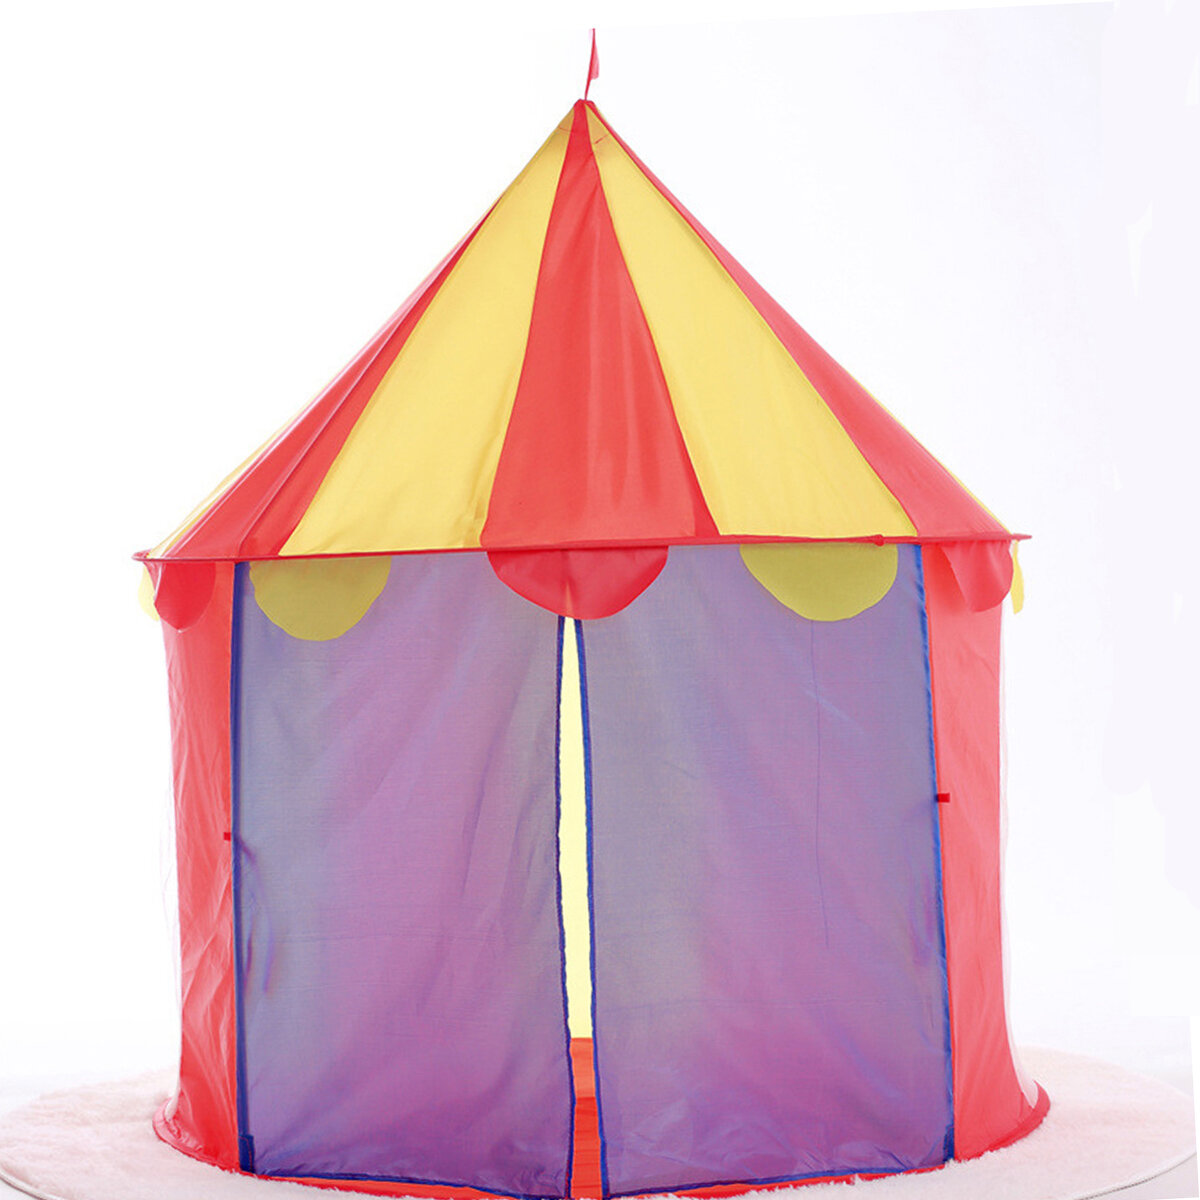 

135x100 см Детский складной игровой домик в замке На открытом воздухе / Крытая игровая палатка Творческая игра в юрте